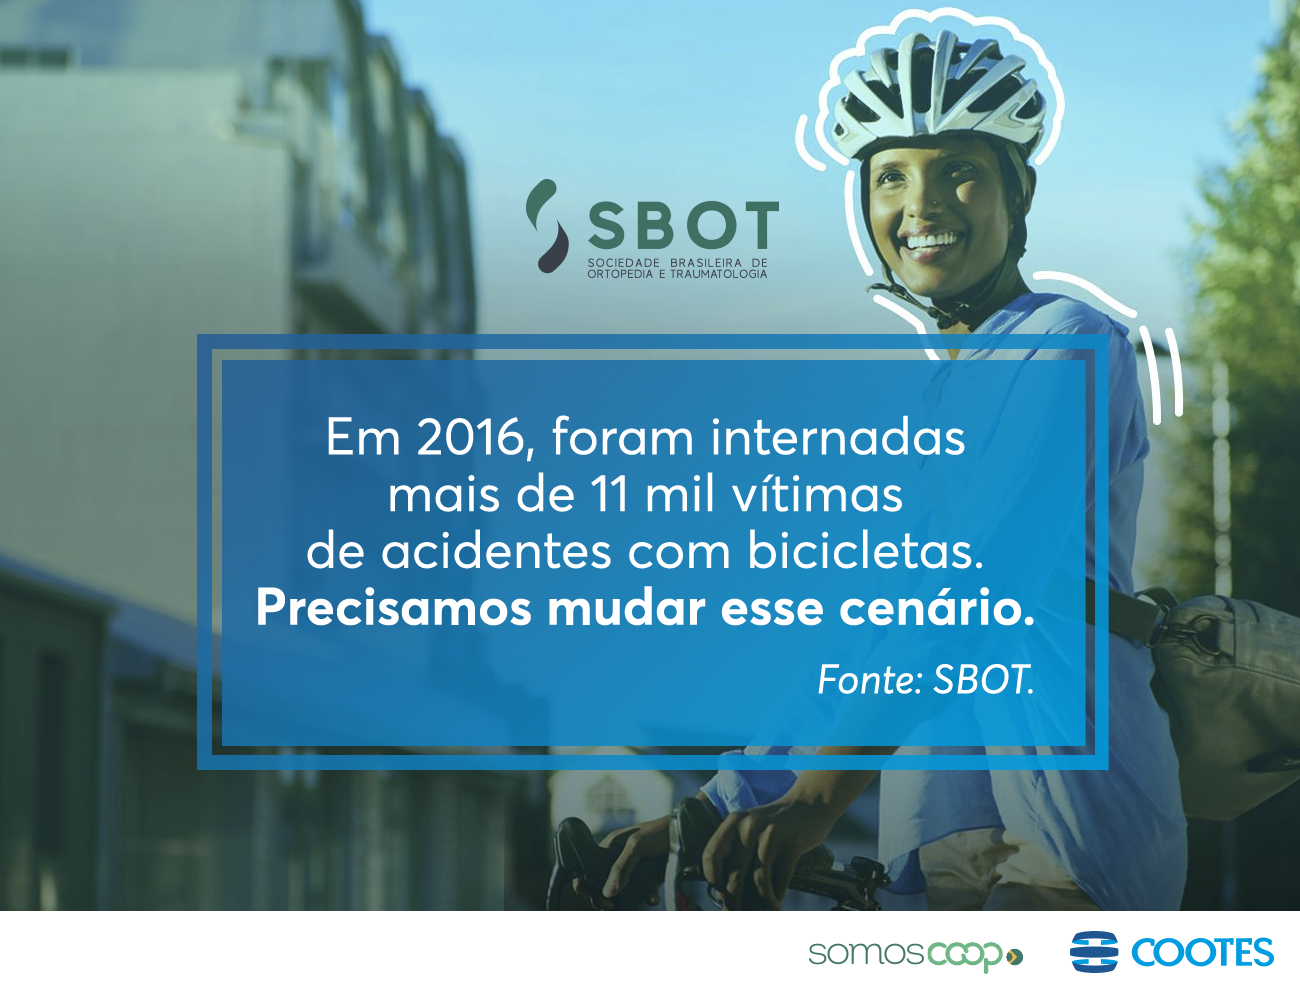 Bicicleta Segura: uma campanha da SBOT em prol da segurança dos ciclistas